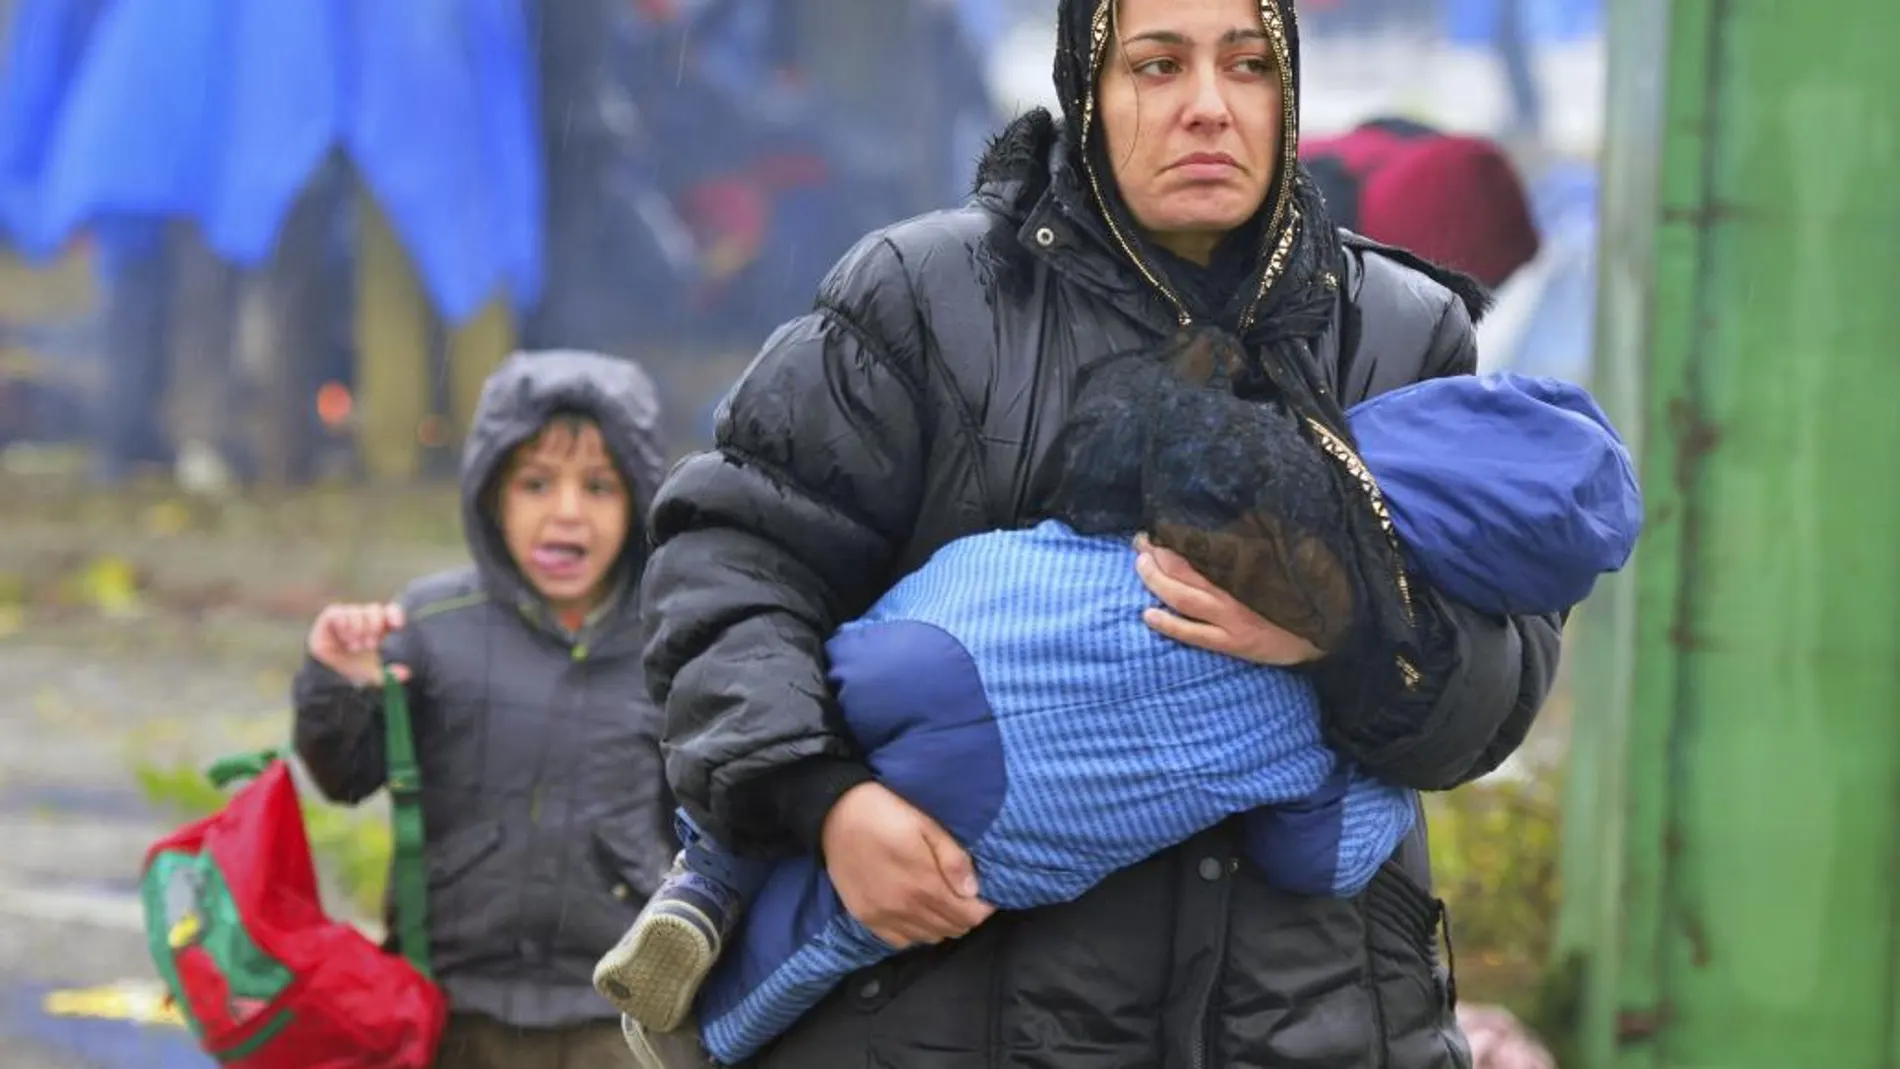 Una mujer camina con su hijo en brazos bajo la lluvia mientras en la frontera entre Croacia y Eslovenia en Trnovec (Croacia)